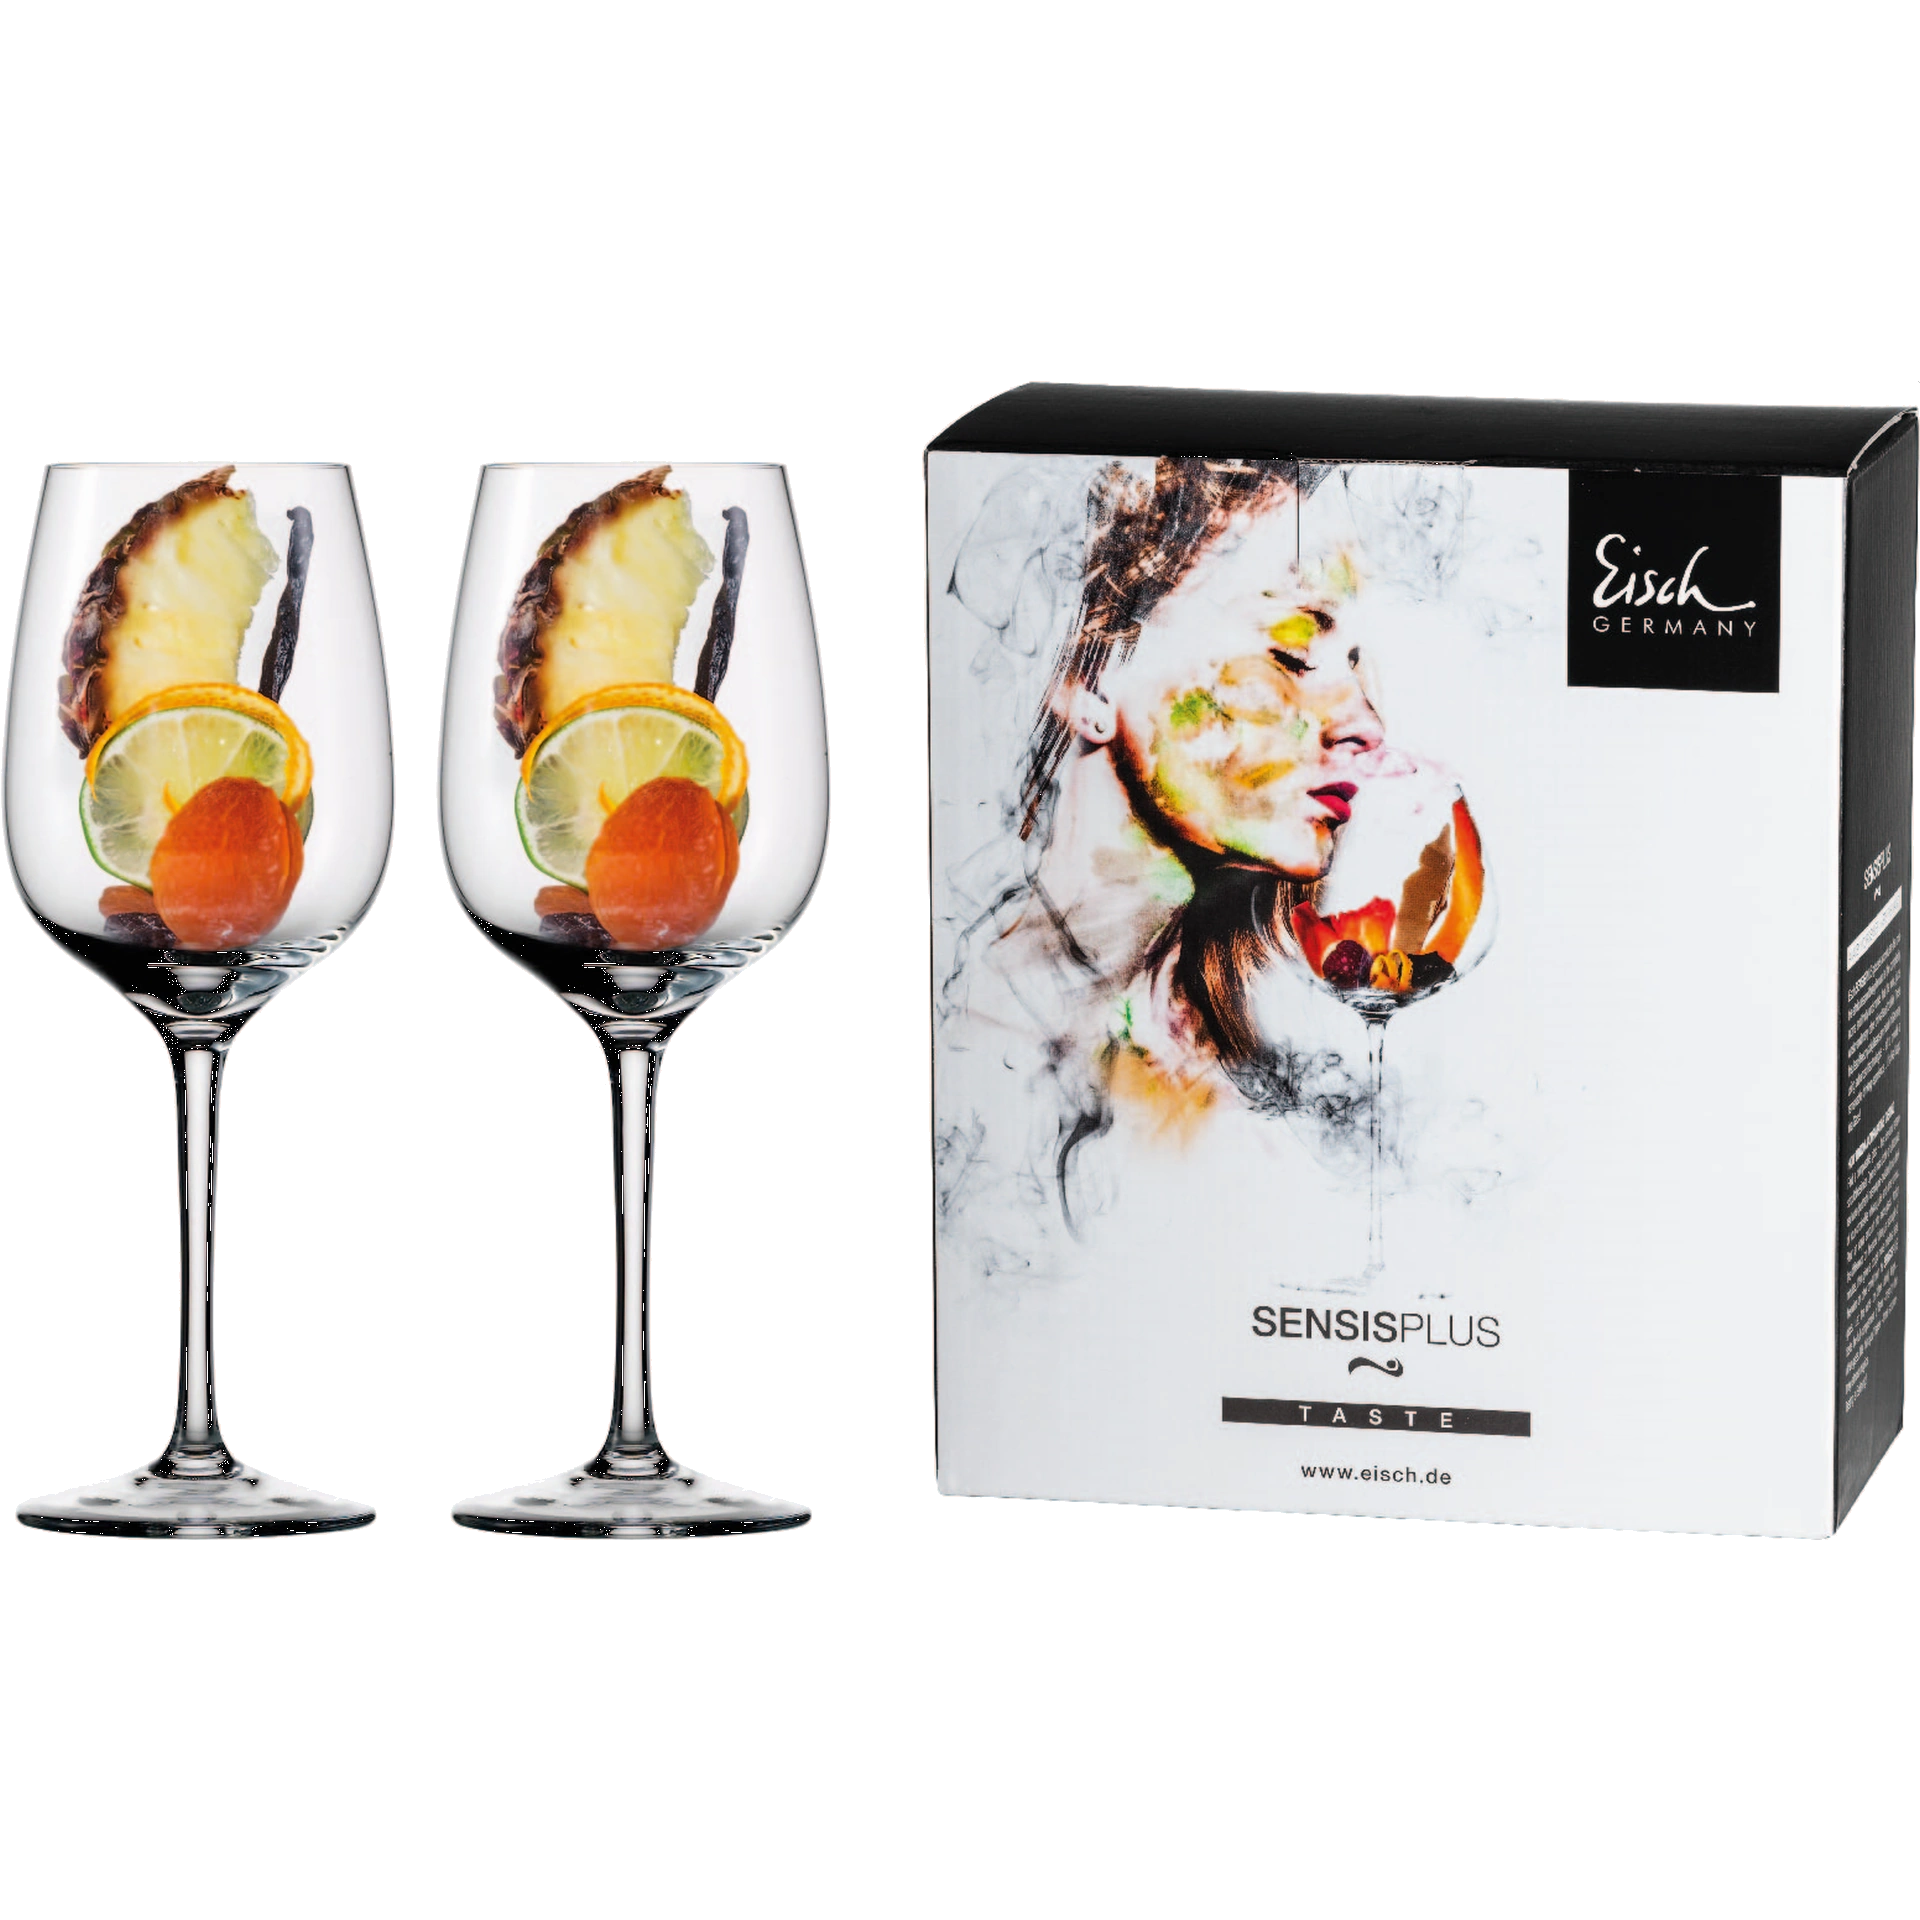 Eisch Chardonnay Glas Superior SENSISPLUS - 2 Stück im Geschenkkarton